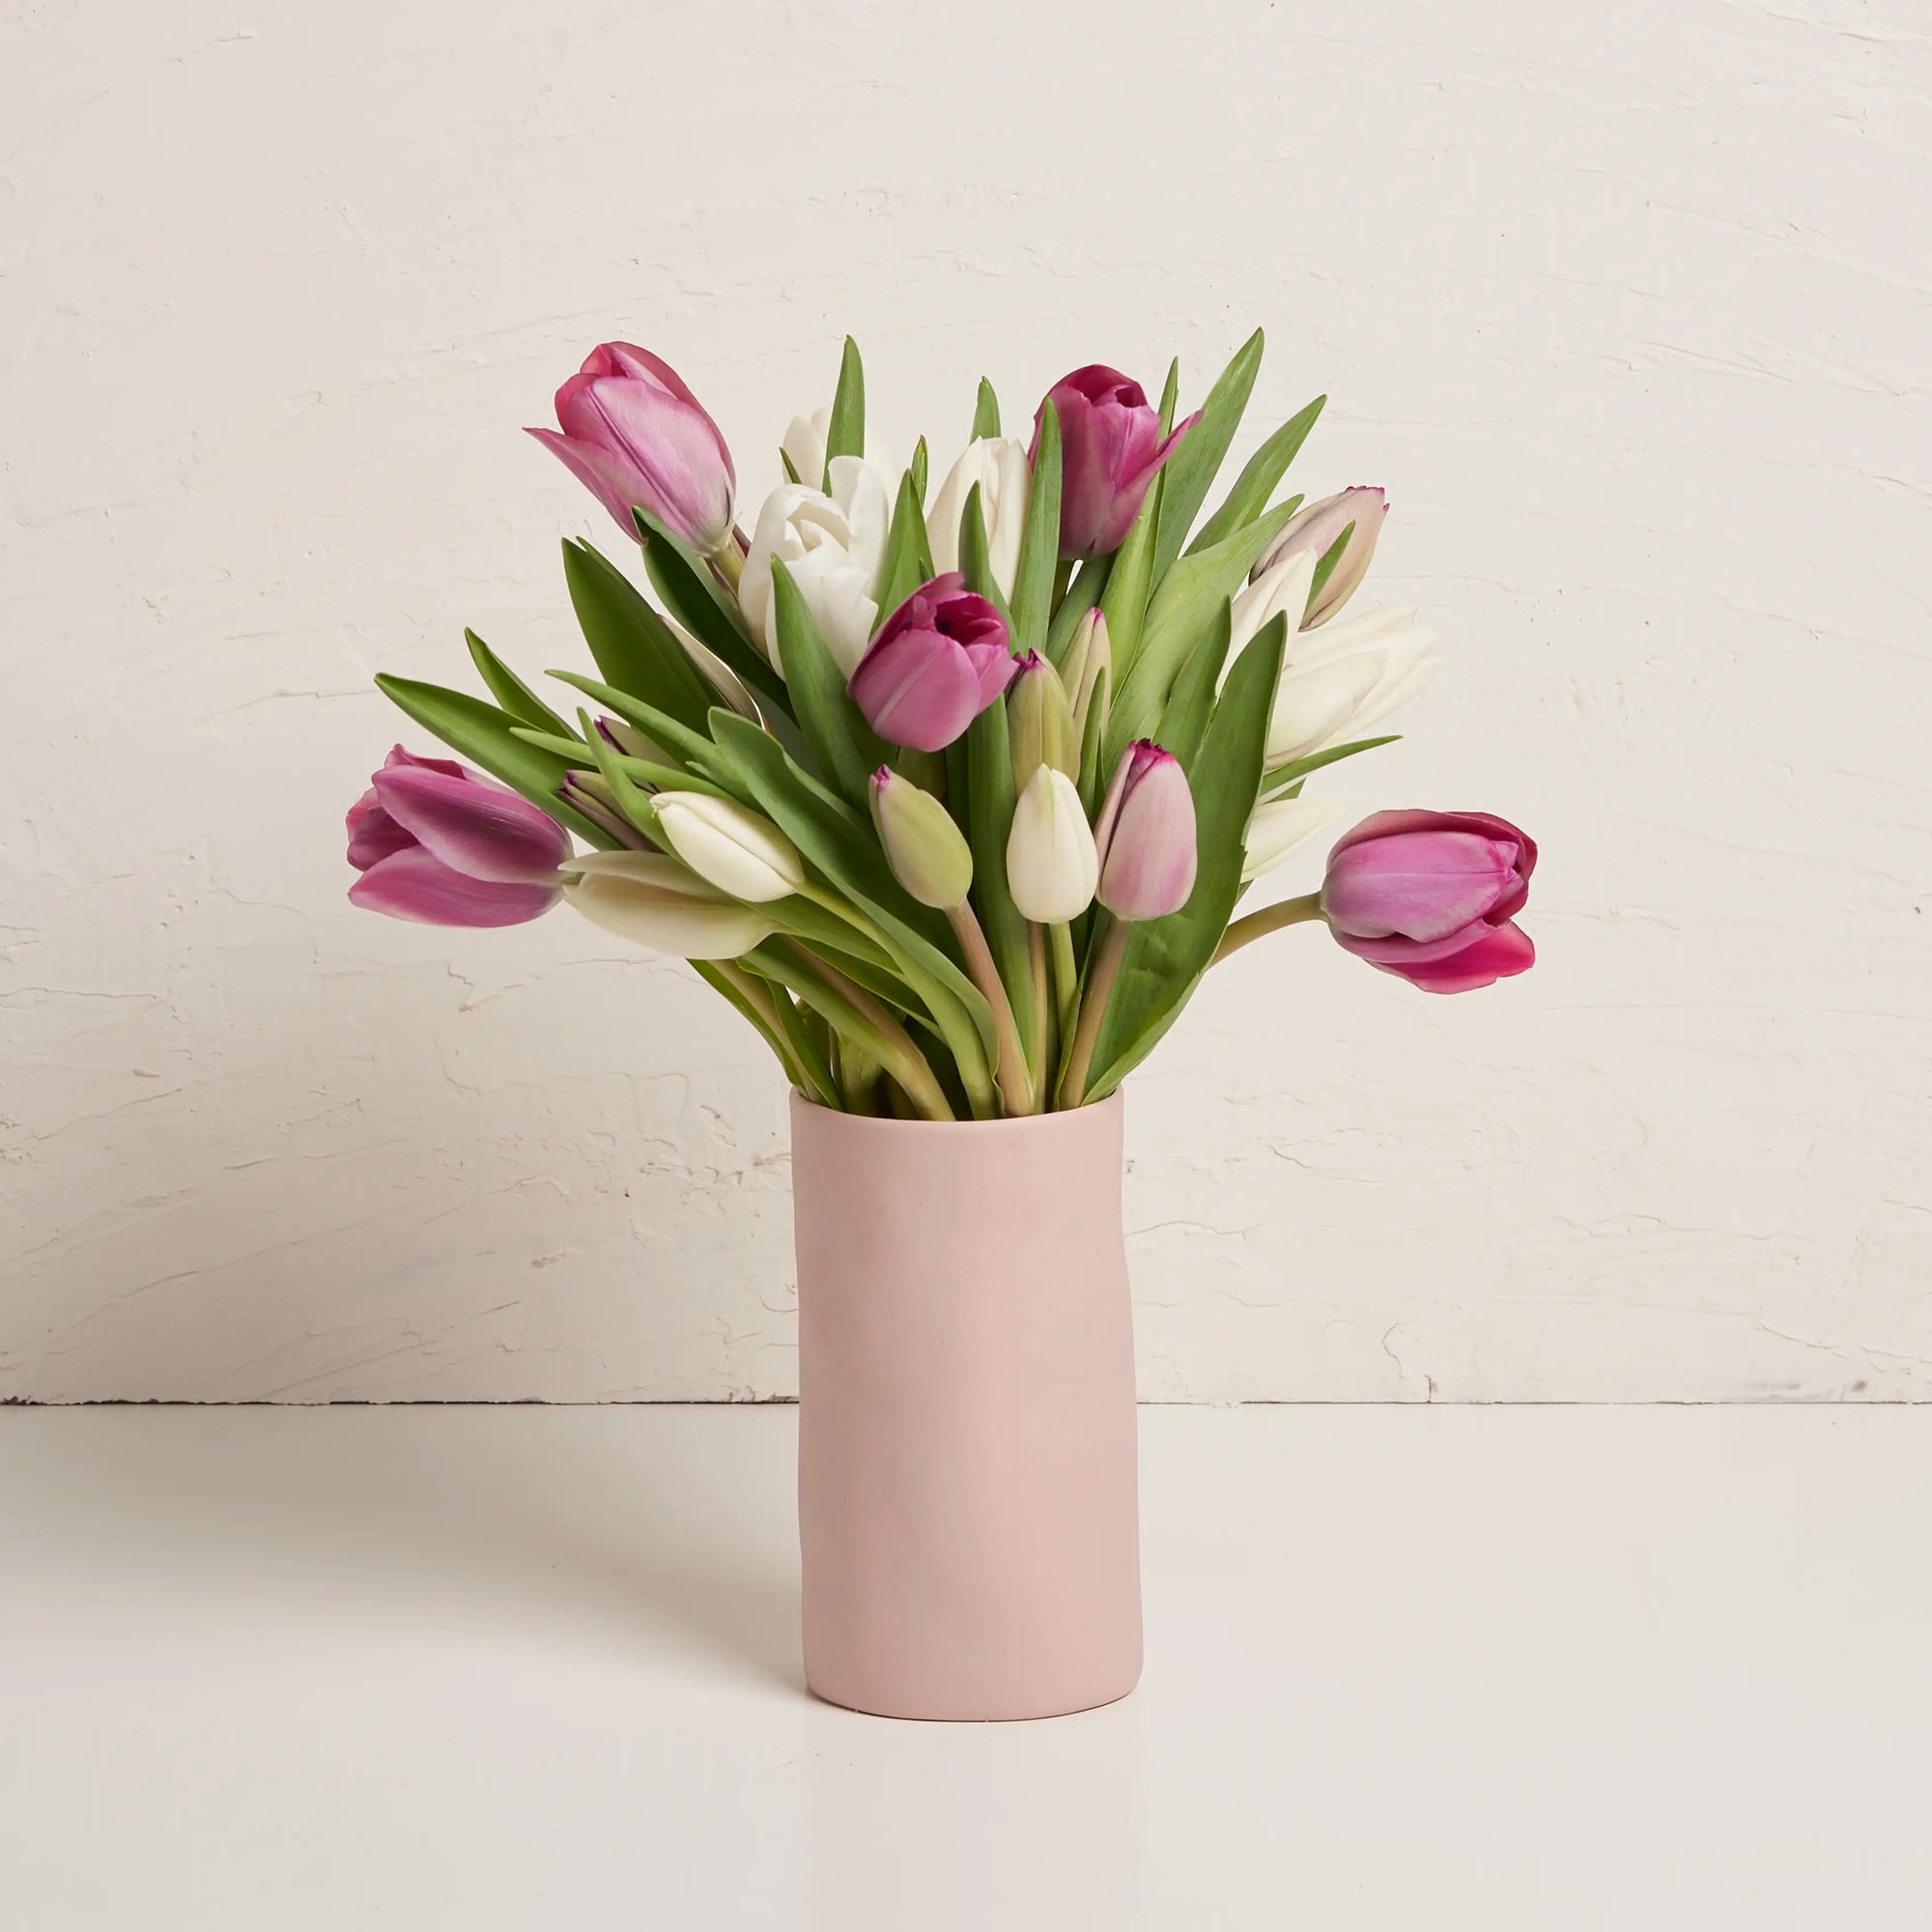 Tulips in Ceramic Vase